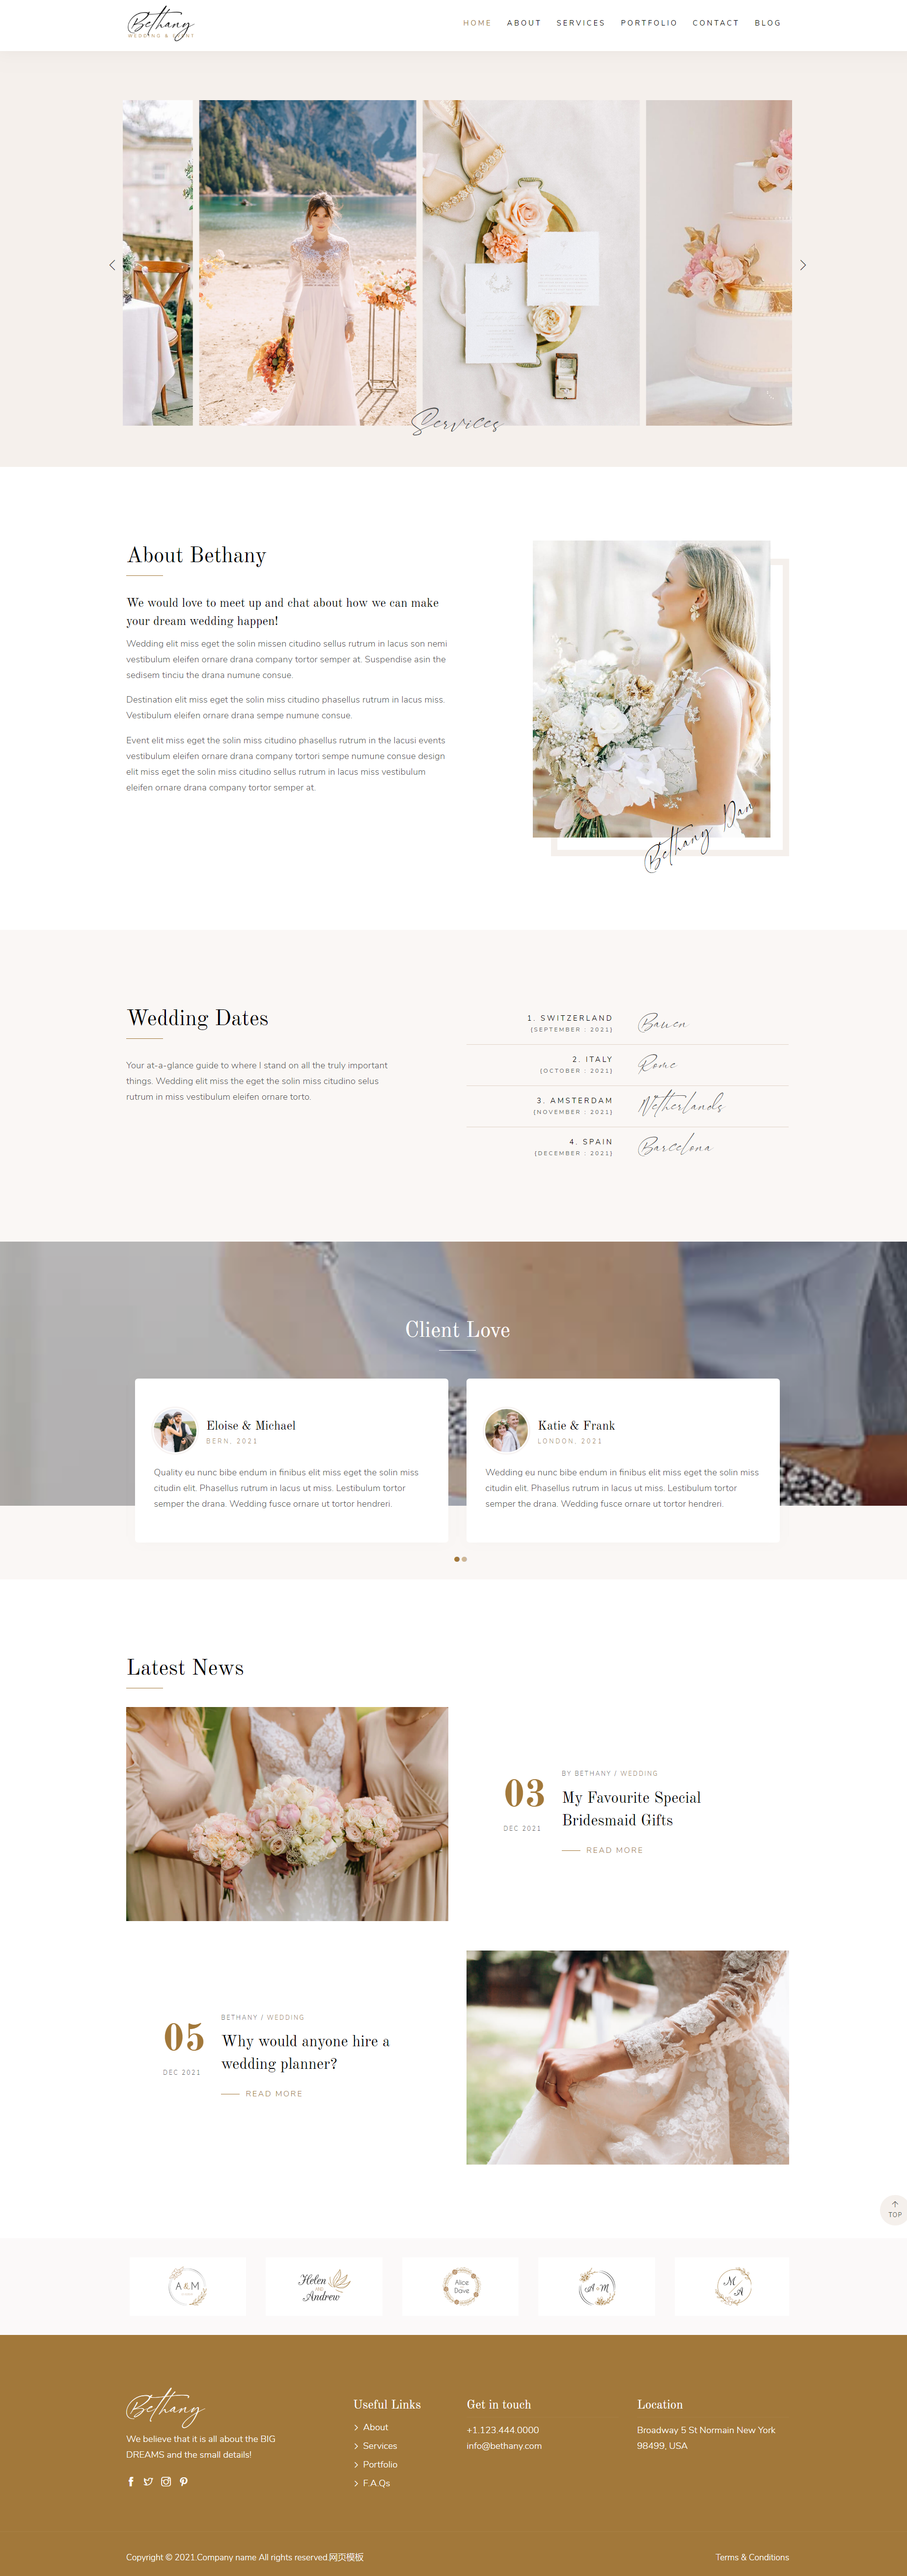 HTML棕色实用形式婚礼活动策划企业网站模板代码